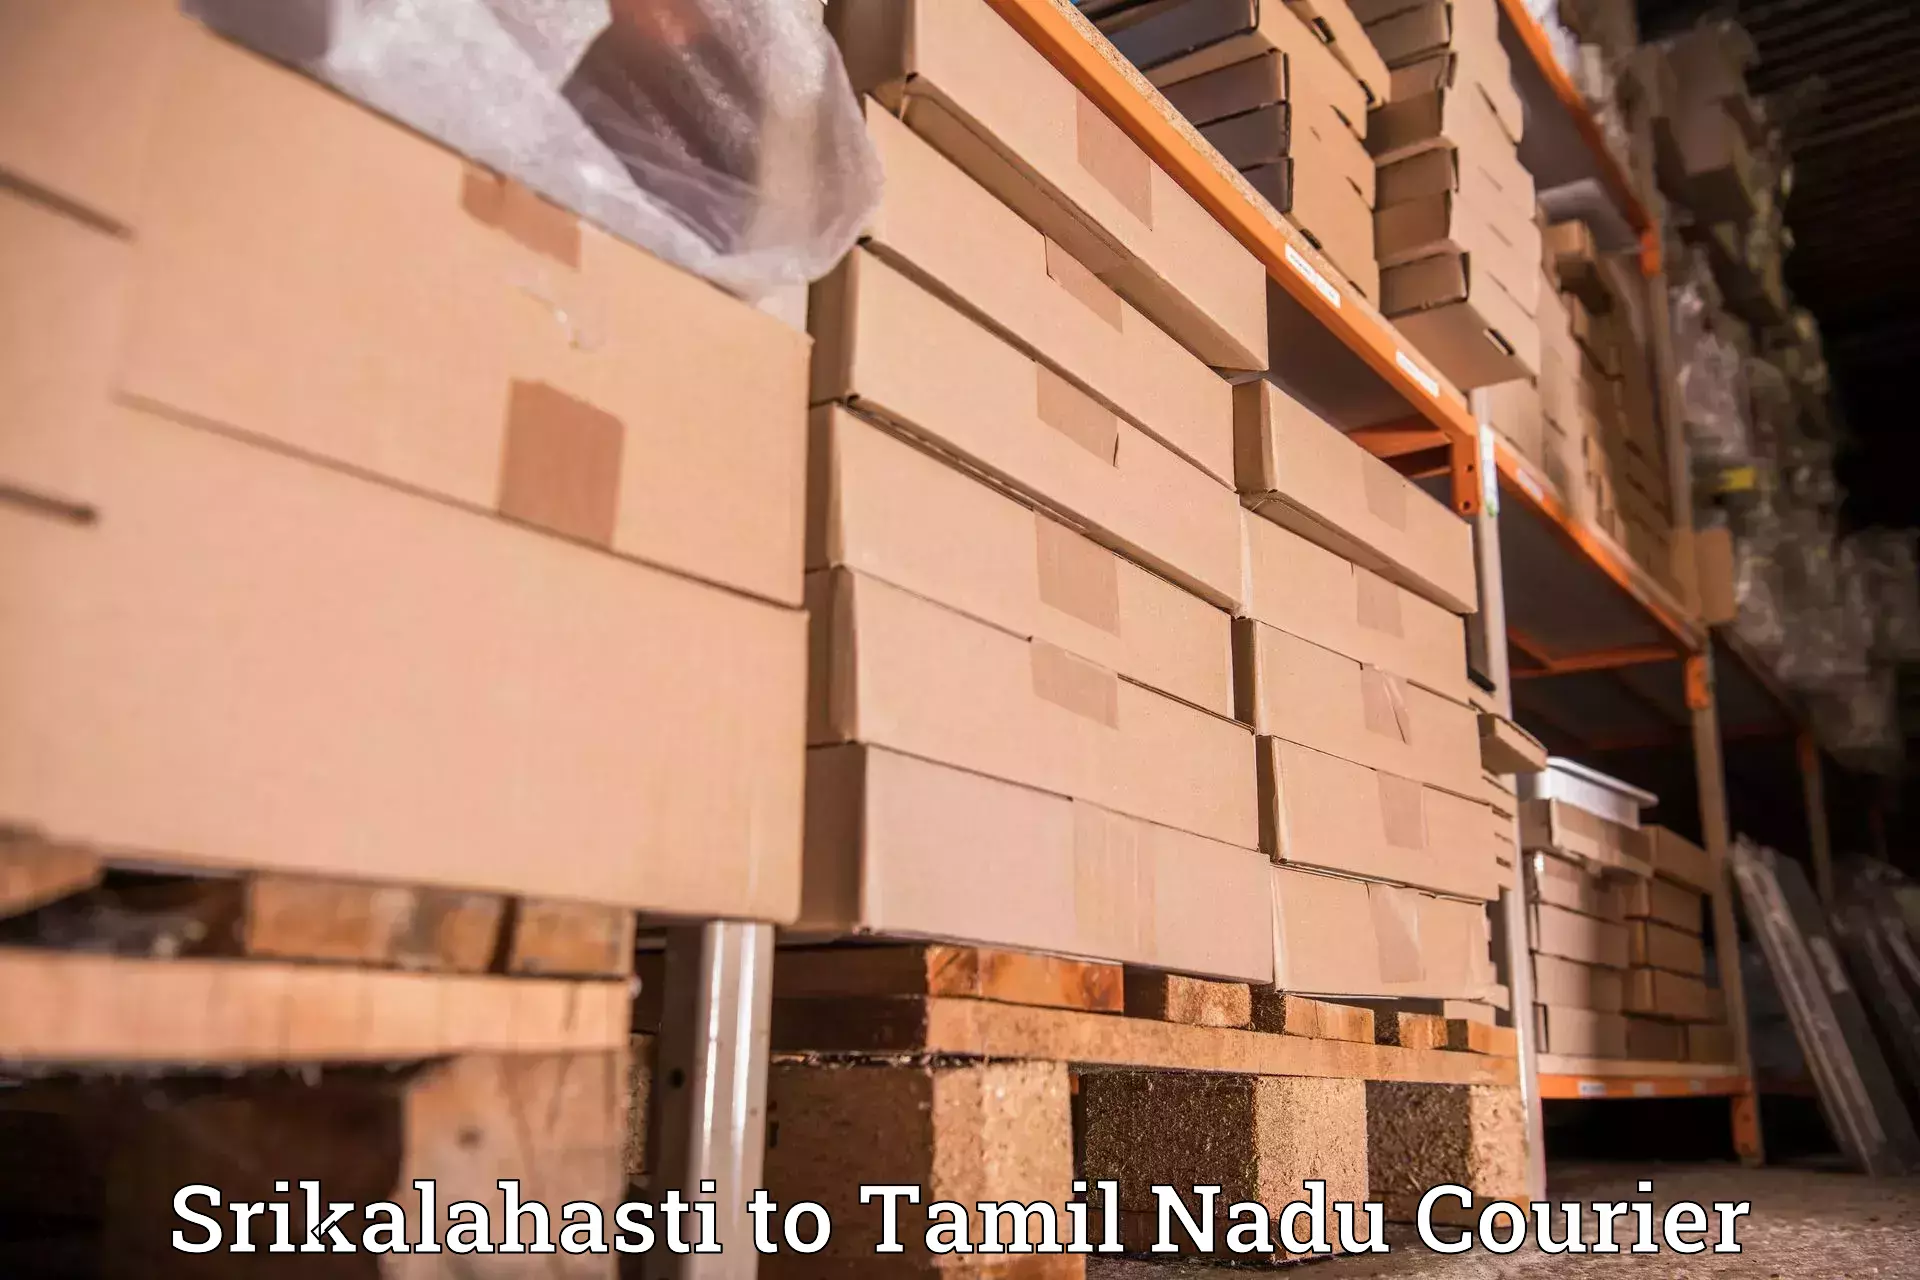 Urgent courier needs Srikalahasti to Tamil Nadu